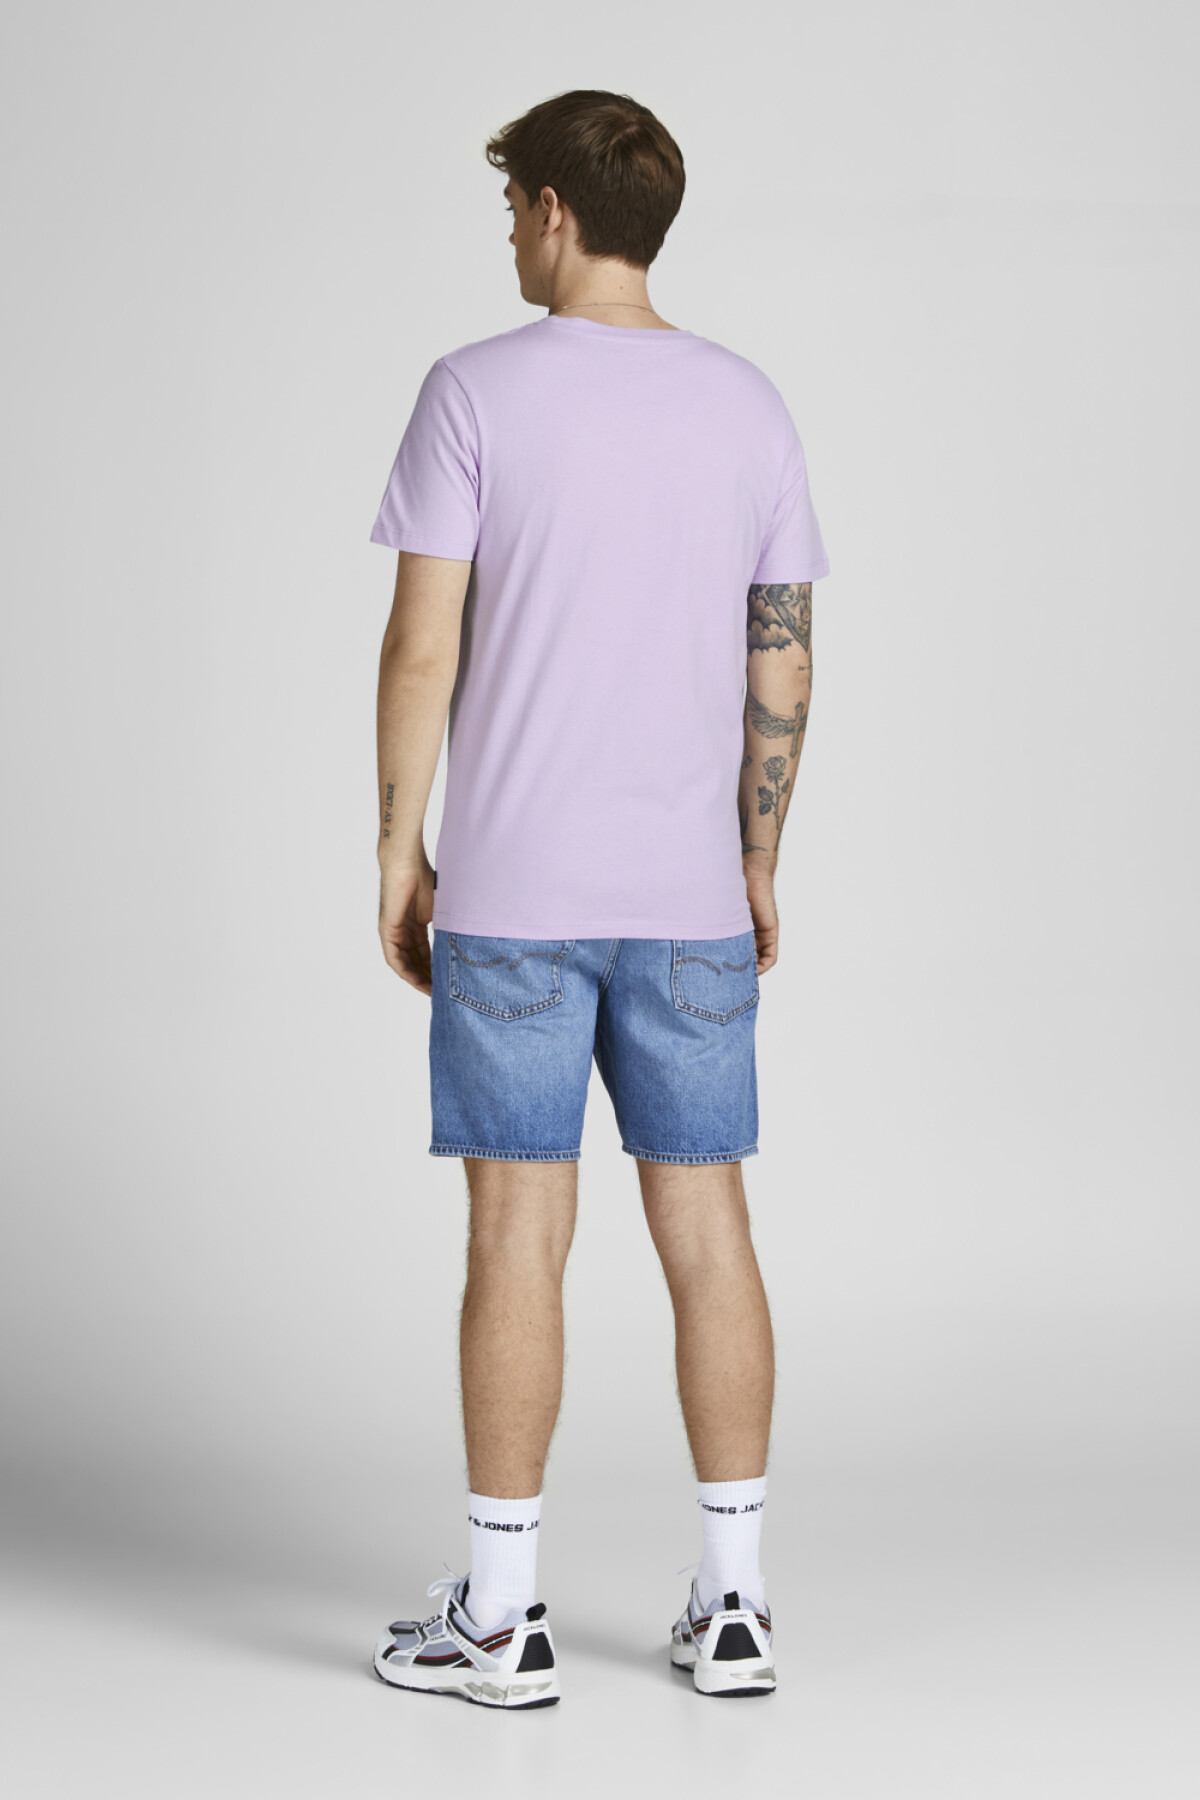 Camiseta Font Lavender